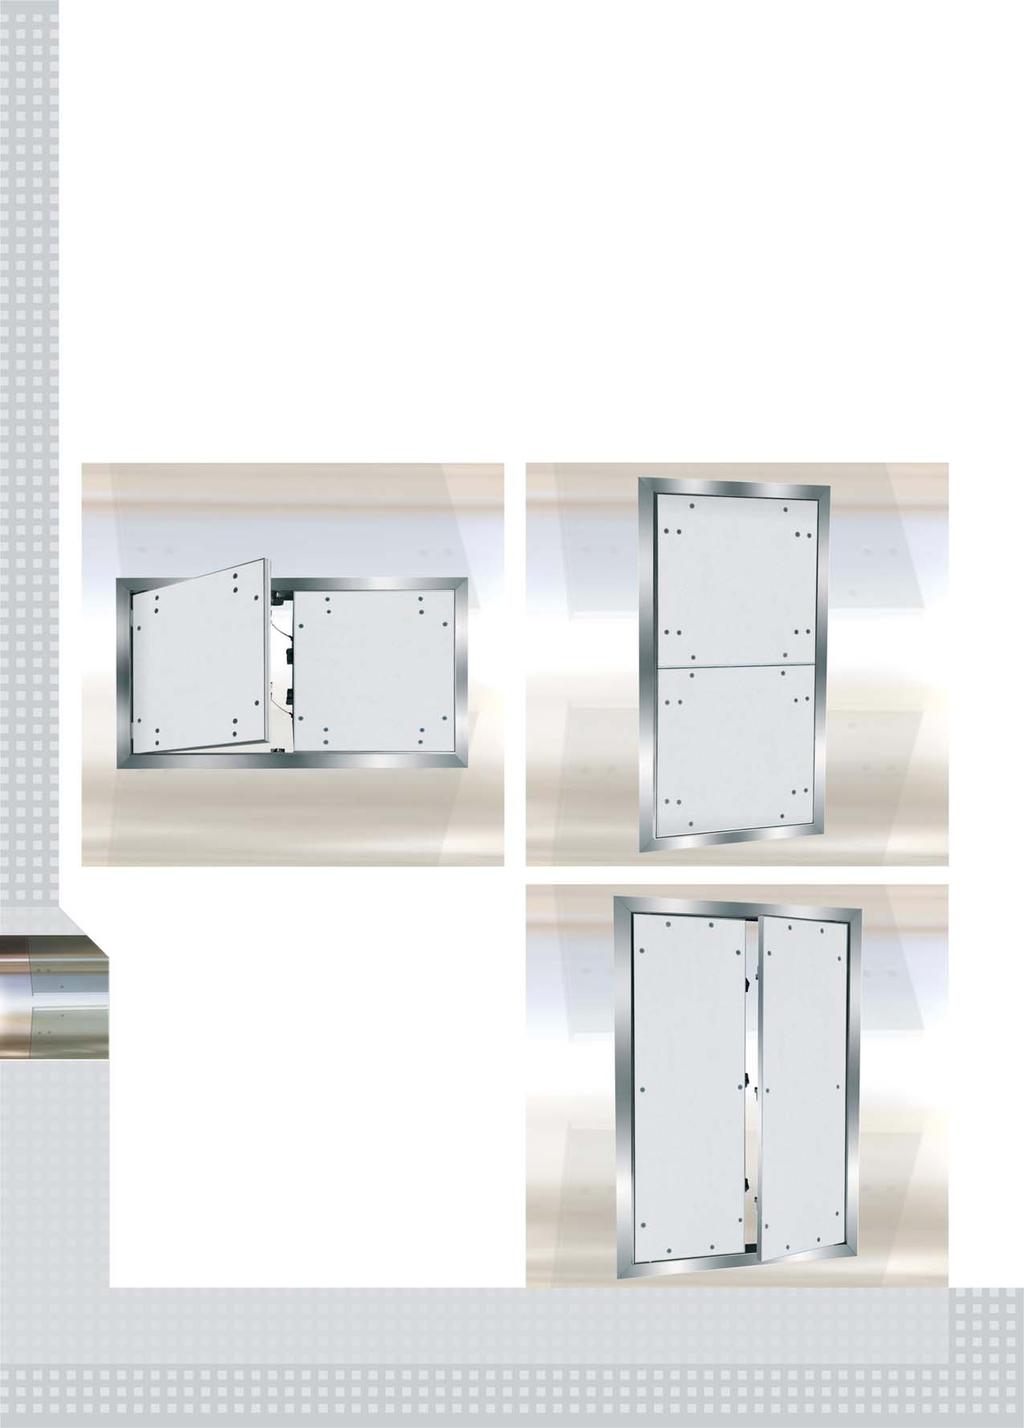 Két Két vagy vagy többrészes többrészes ajtók ajtók Két vagy többrészes revíziós ajtók F1/F2 rendszer Revíziós ajtók gipszkarton betéttel vagy betét nélkül revíziós ajtók alumínium keretből, 12,5 mm,